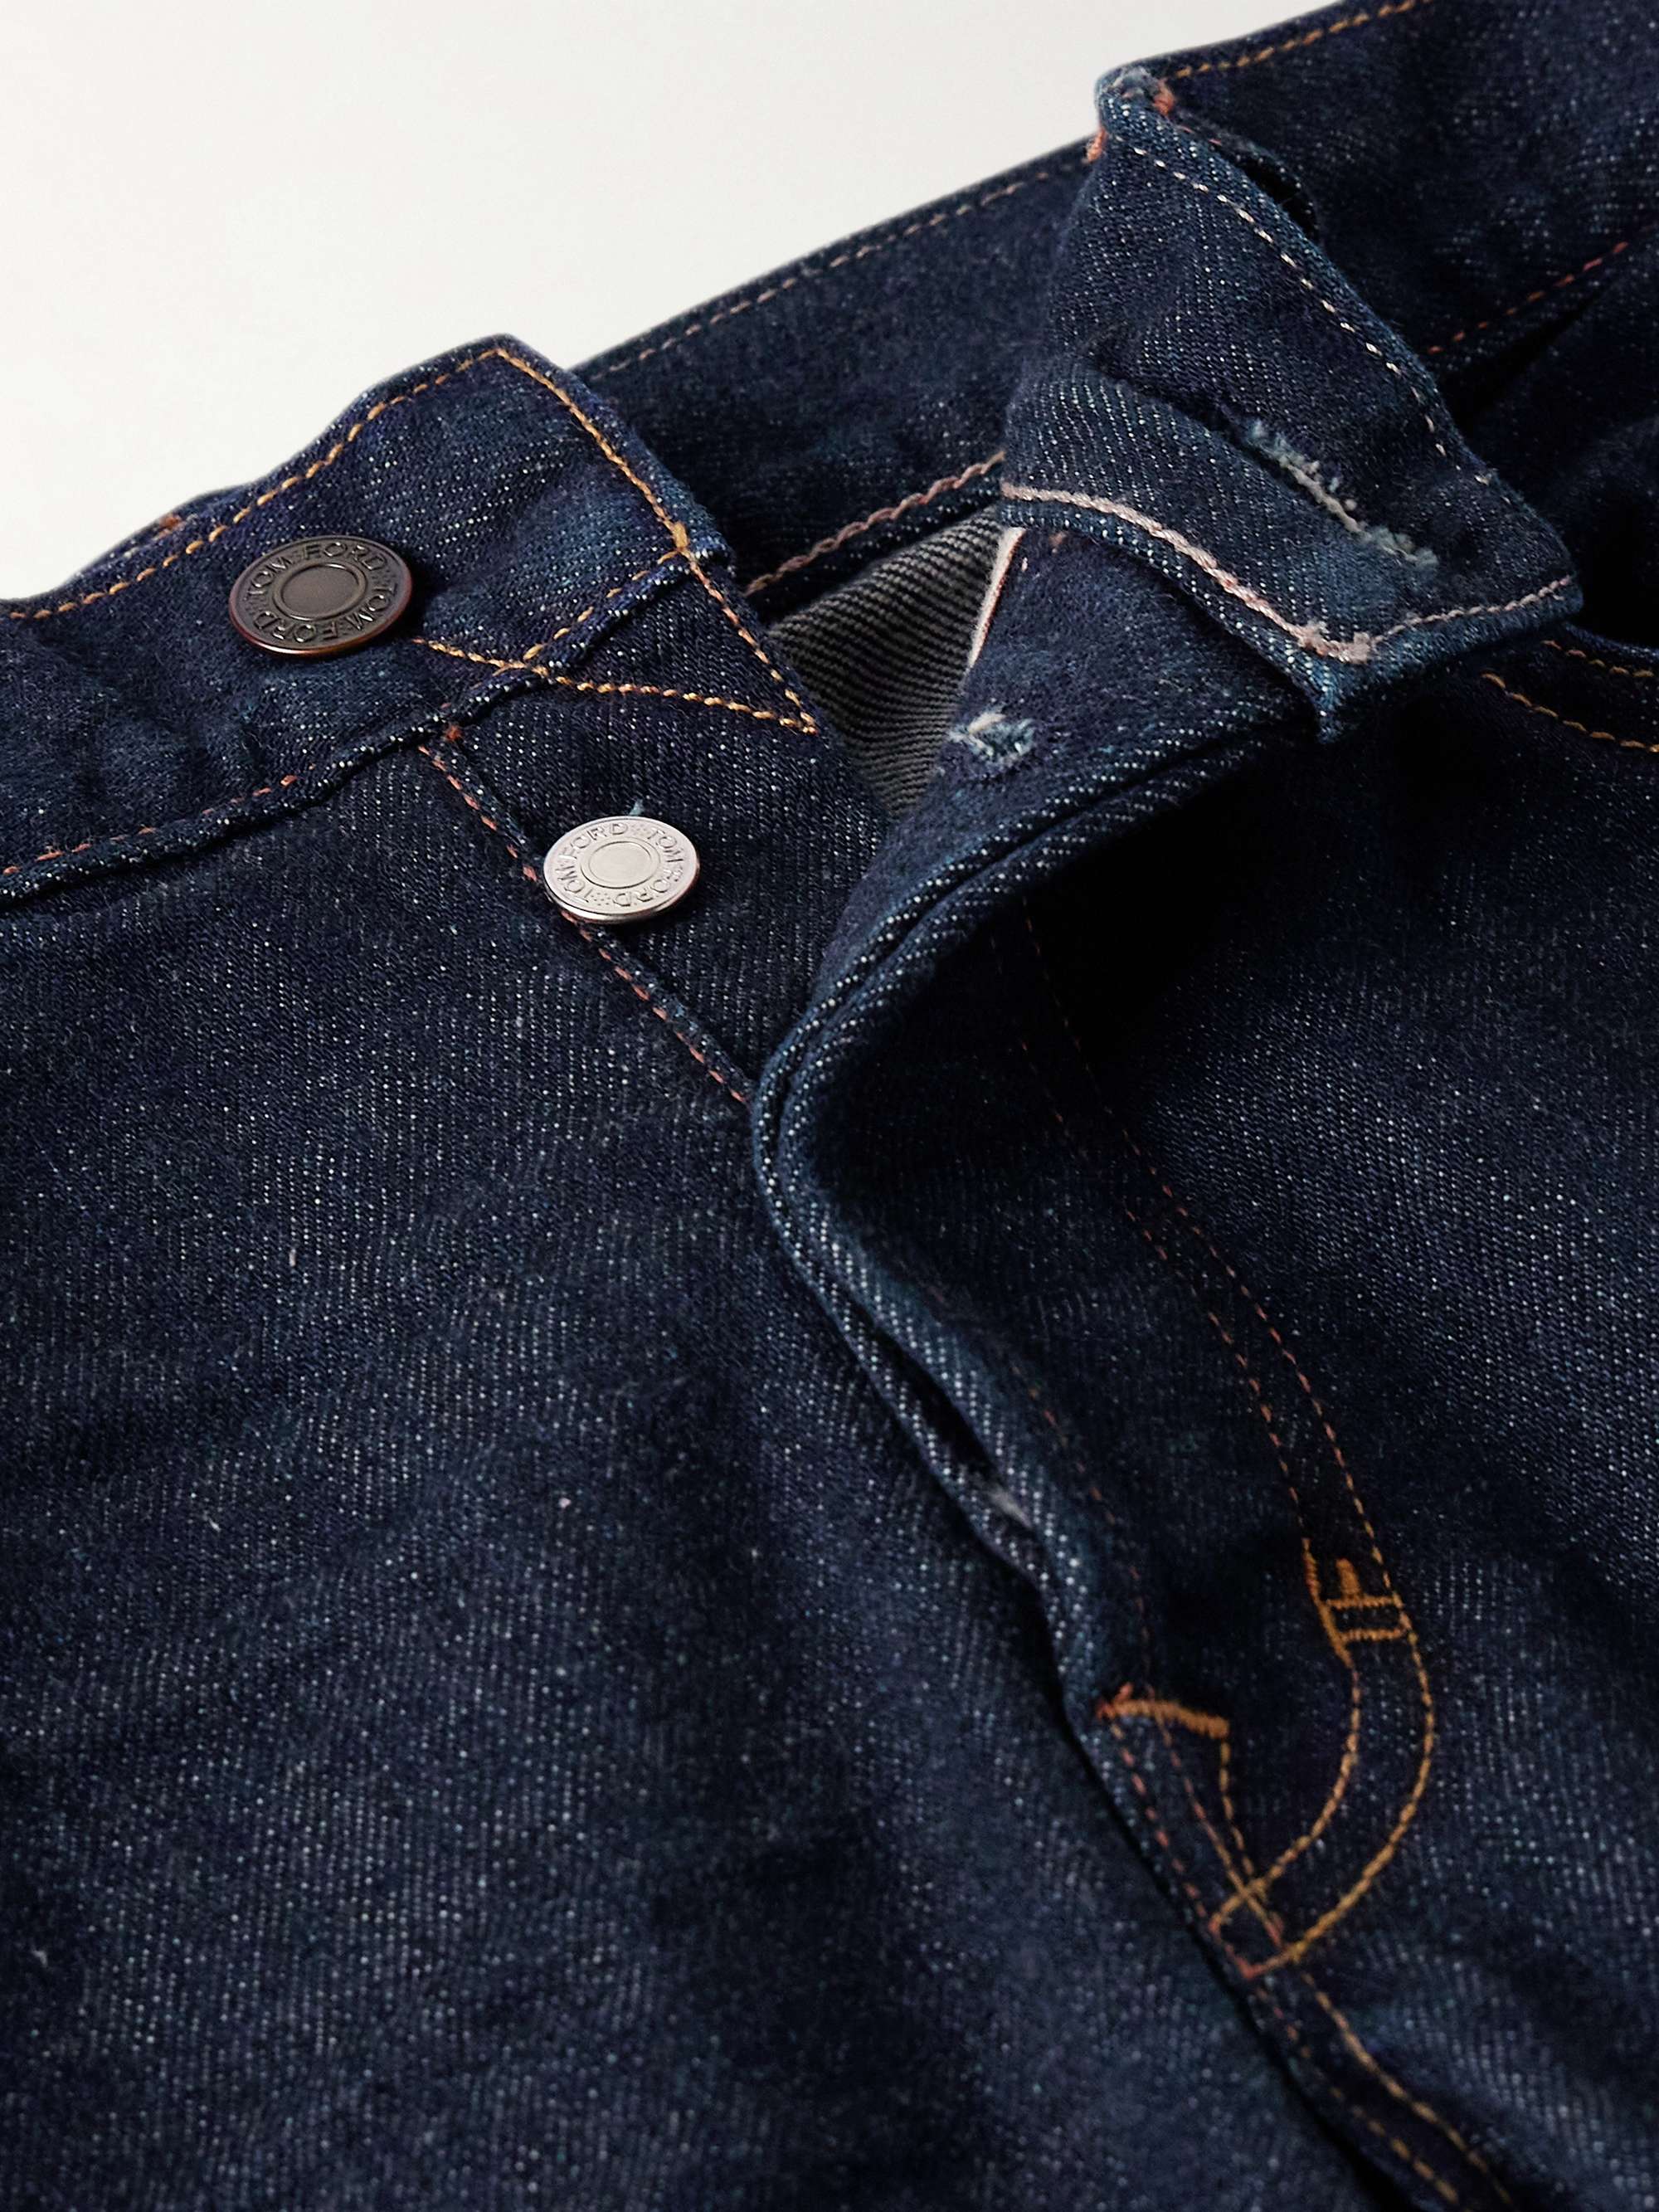 TOM FORD Slim-Fit Jeans for Men | MR PORTER